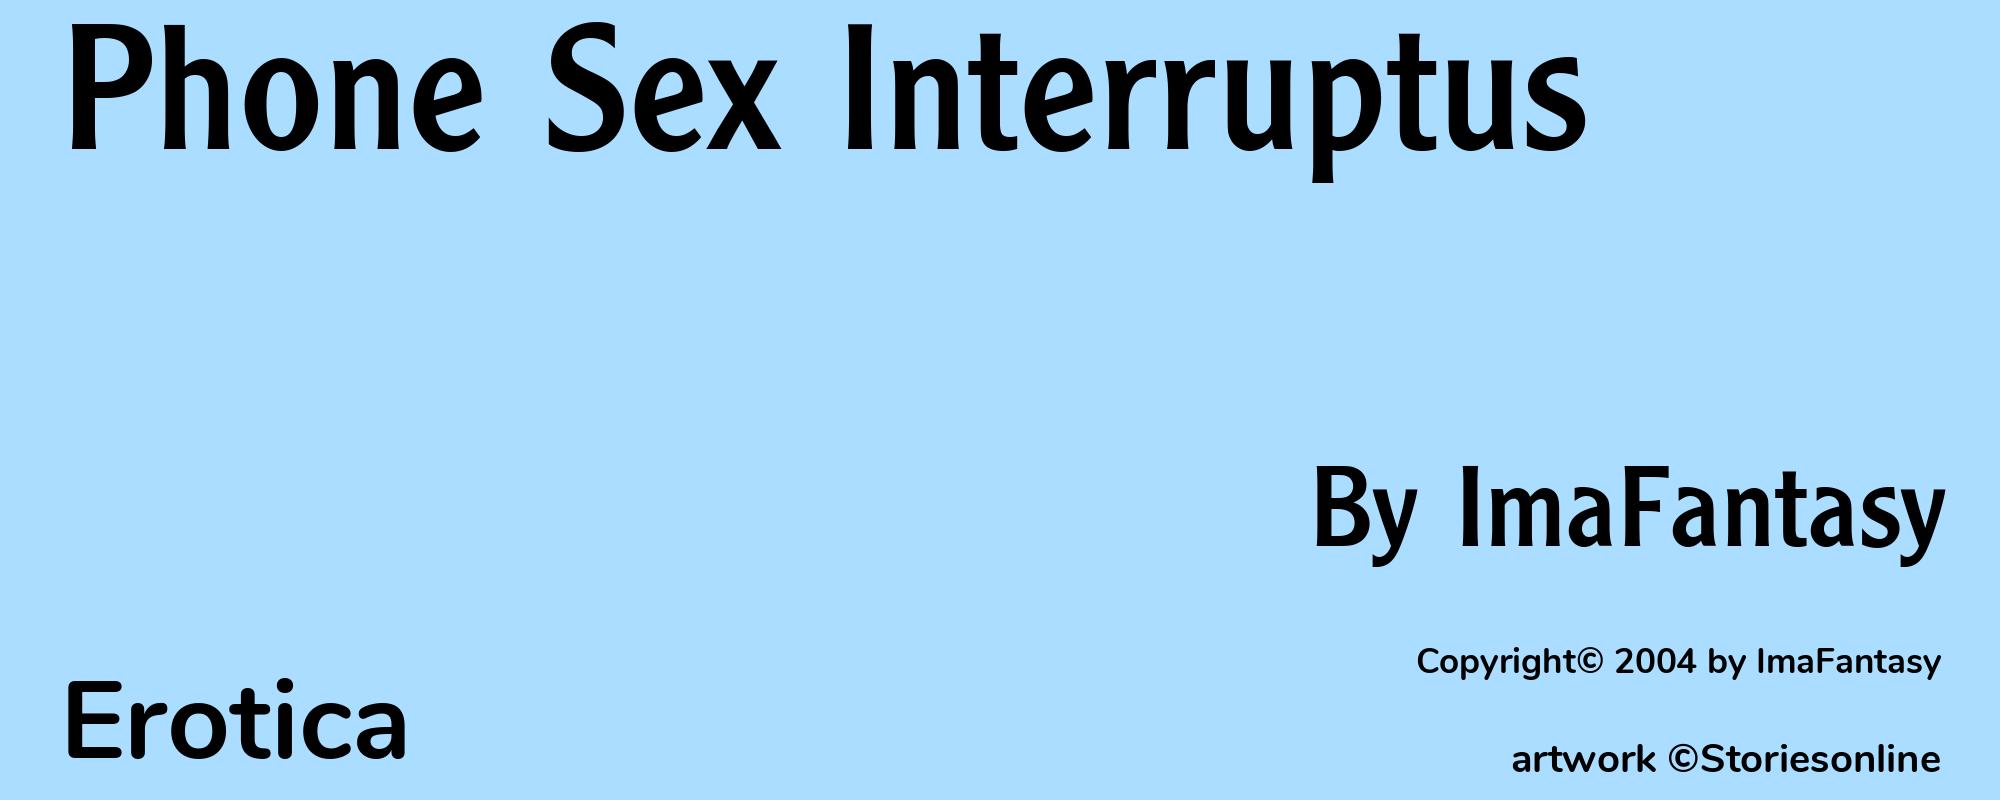 Phone Sex Interruptus - Cover